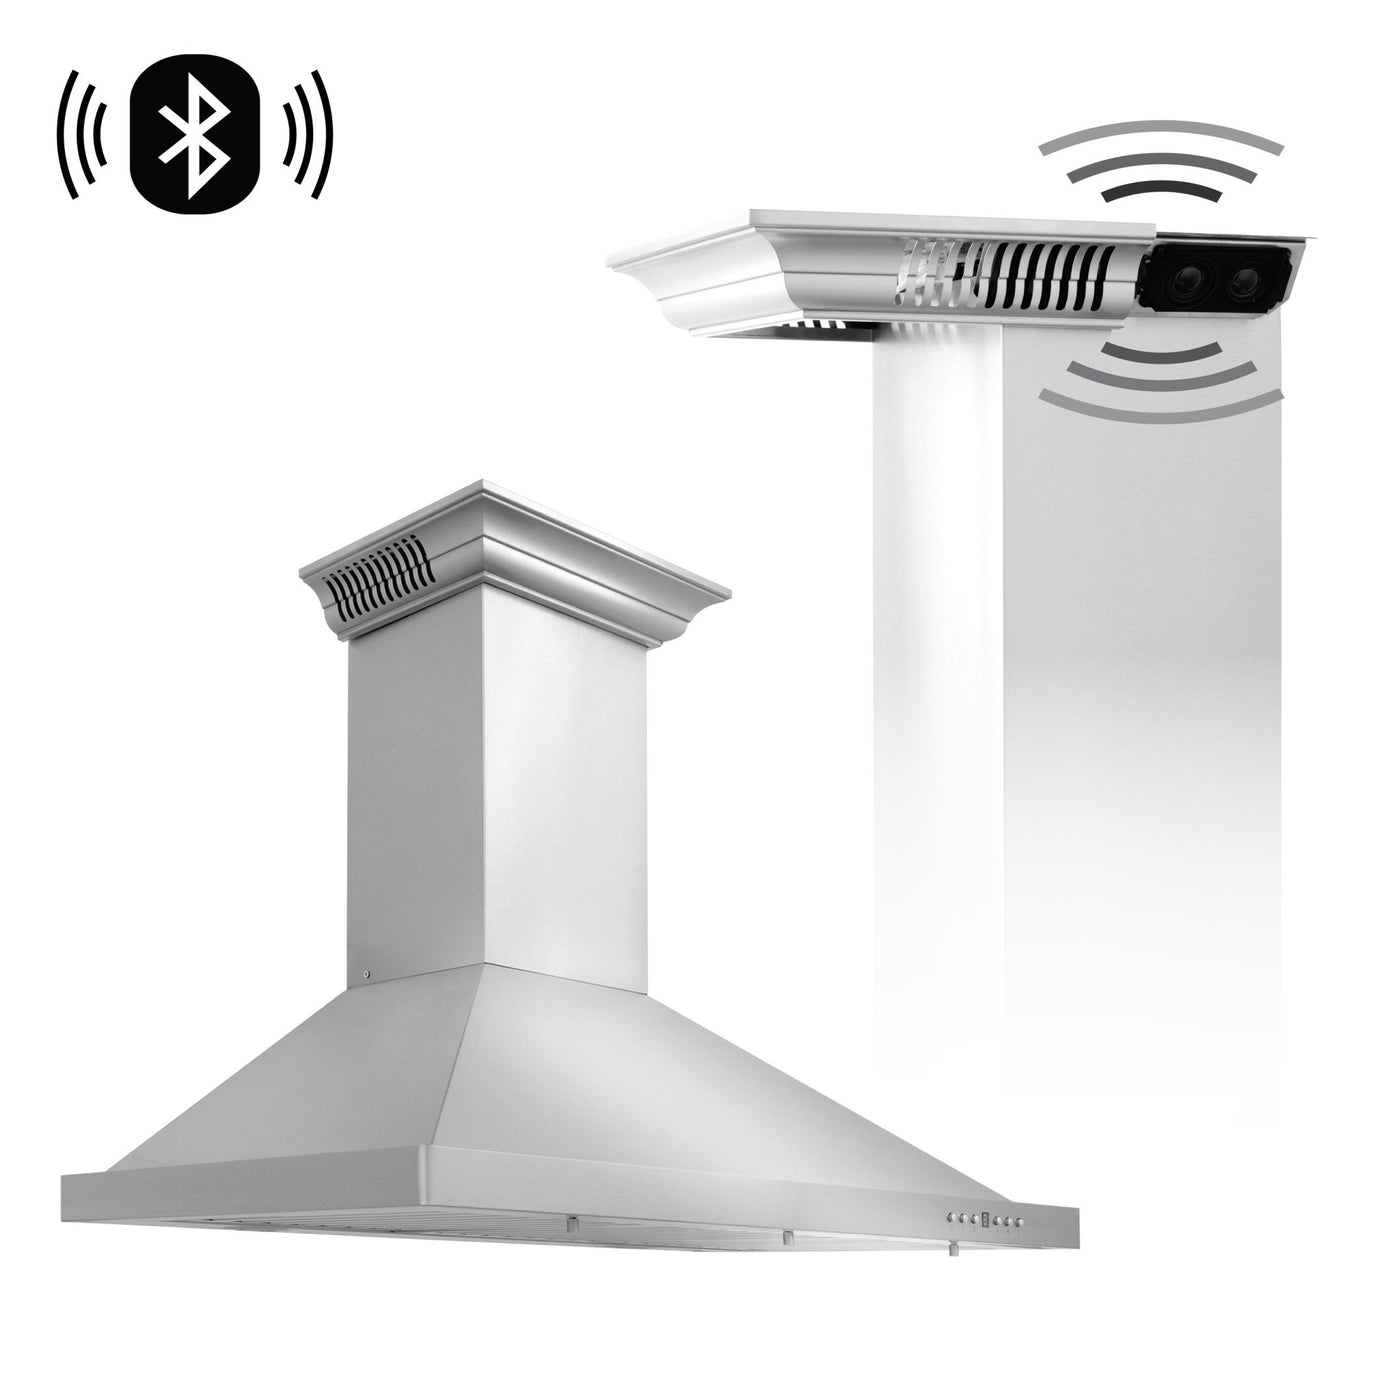 ZLINE Kitchen and Bath, ZLINE Wall Mount Range Hood in Stainless Steel with Built-in CrownSound® Bluetooth Speakers (KBCRN-BT), KBCRN-BT-30,